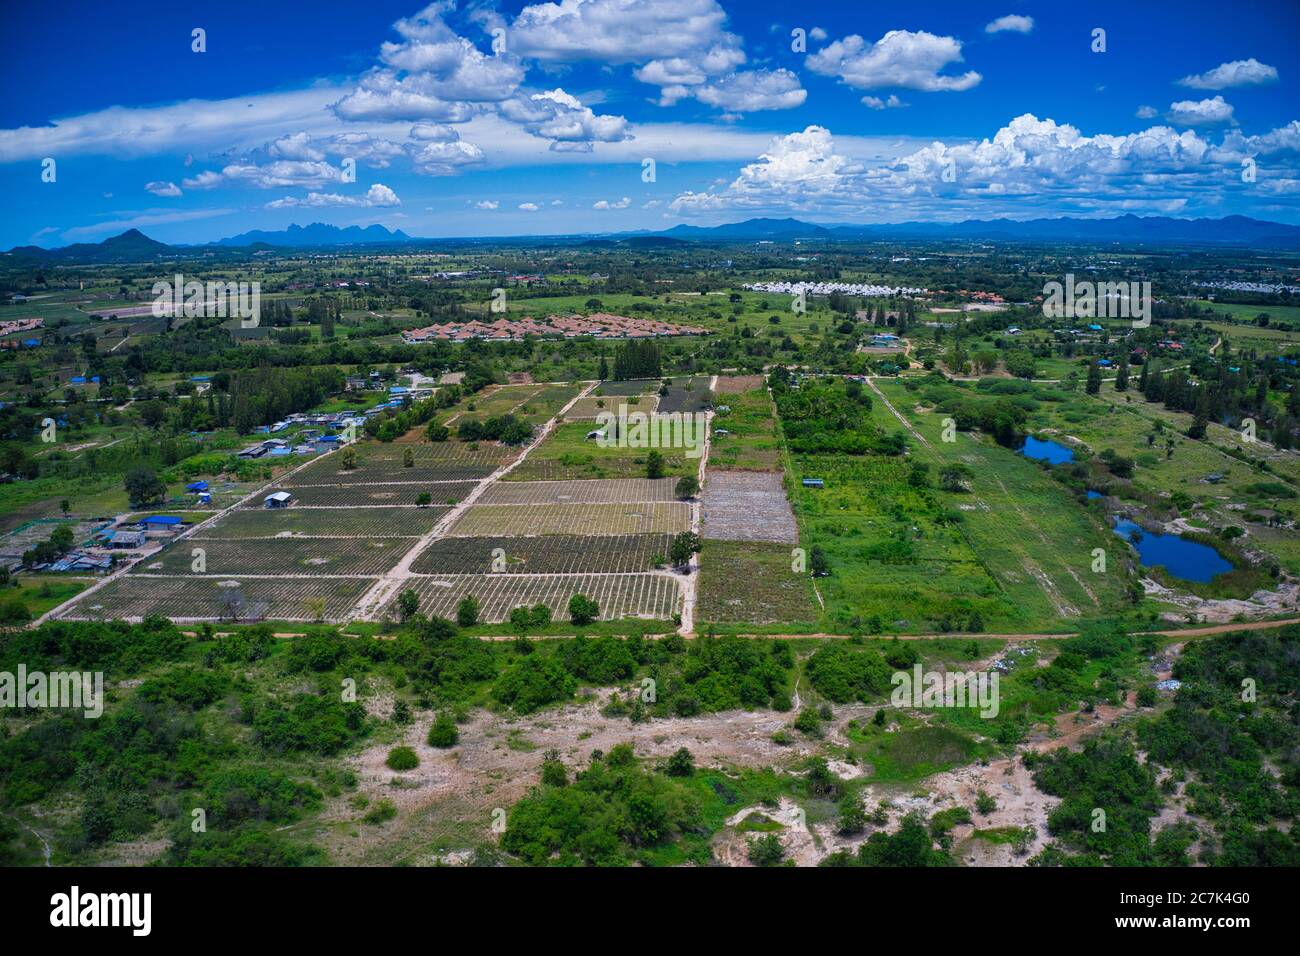 Questa foto unica mostra il paesaggio di Hua Hin Thailandia e sullo sfondo le montagne verdi con un cielo blu leggermente nuvoloso Foto Stock